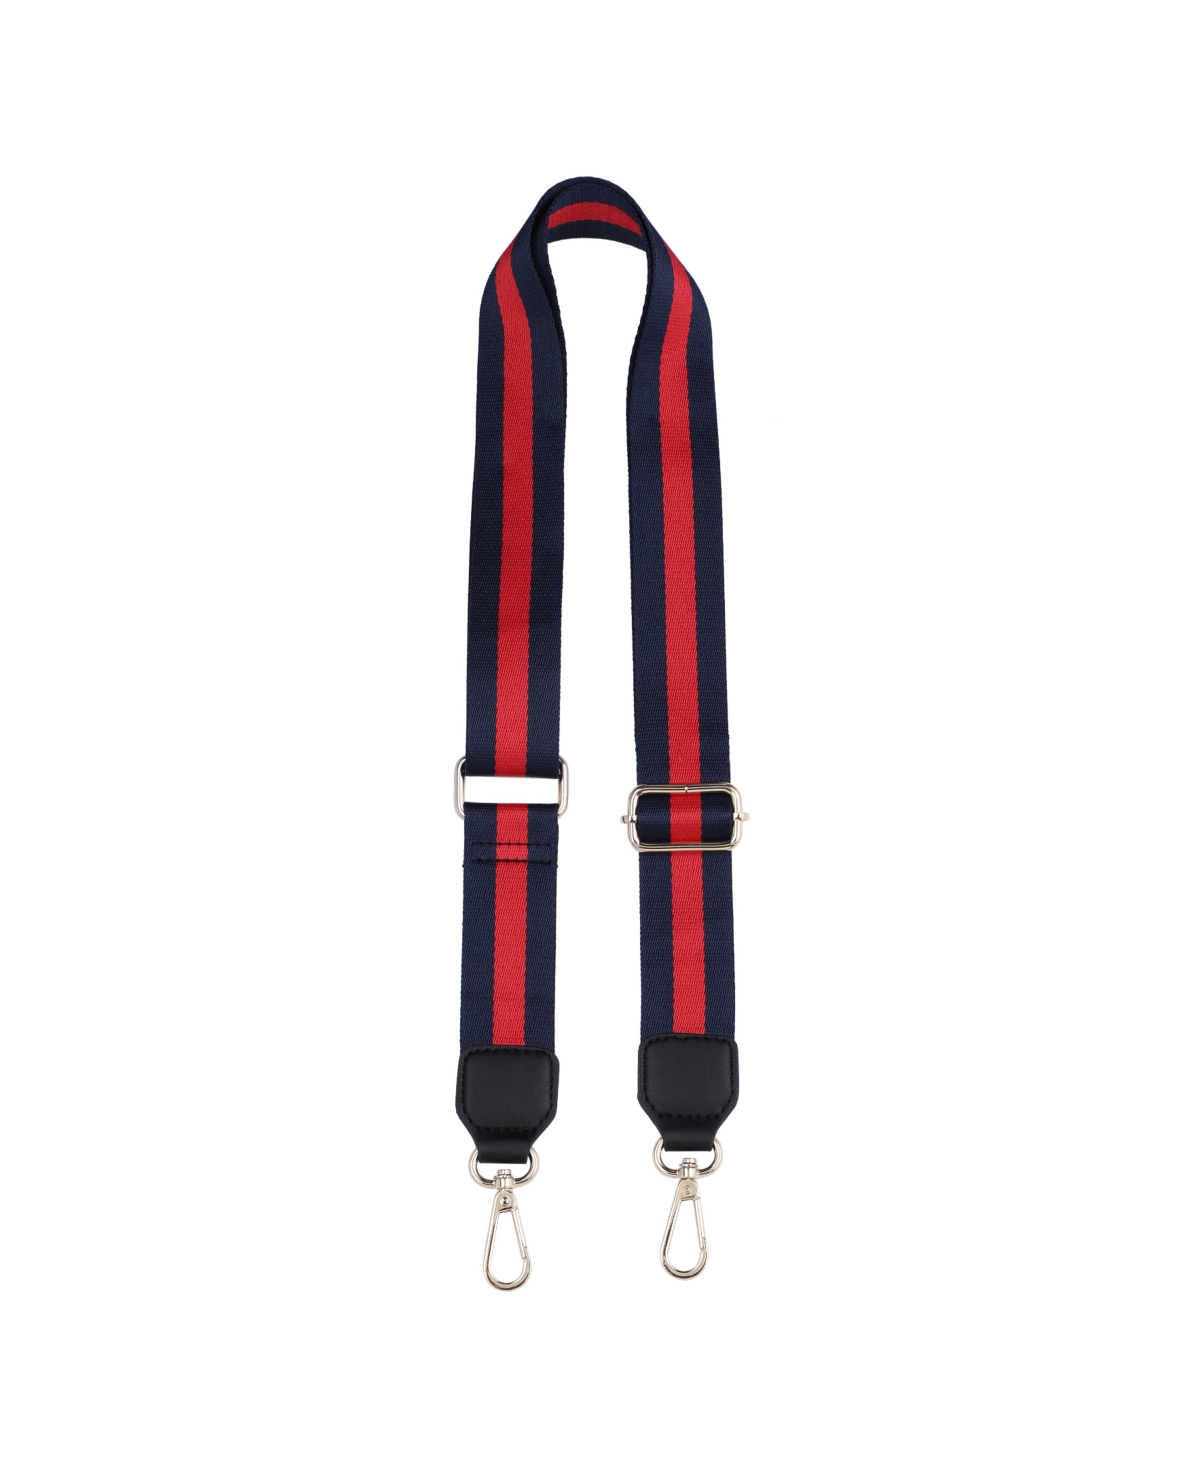 Adjustable Bag Shoulder Straps - Navy Red Navy